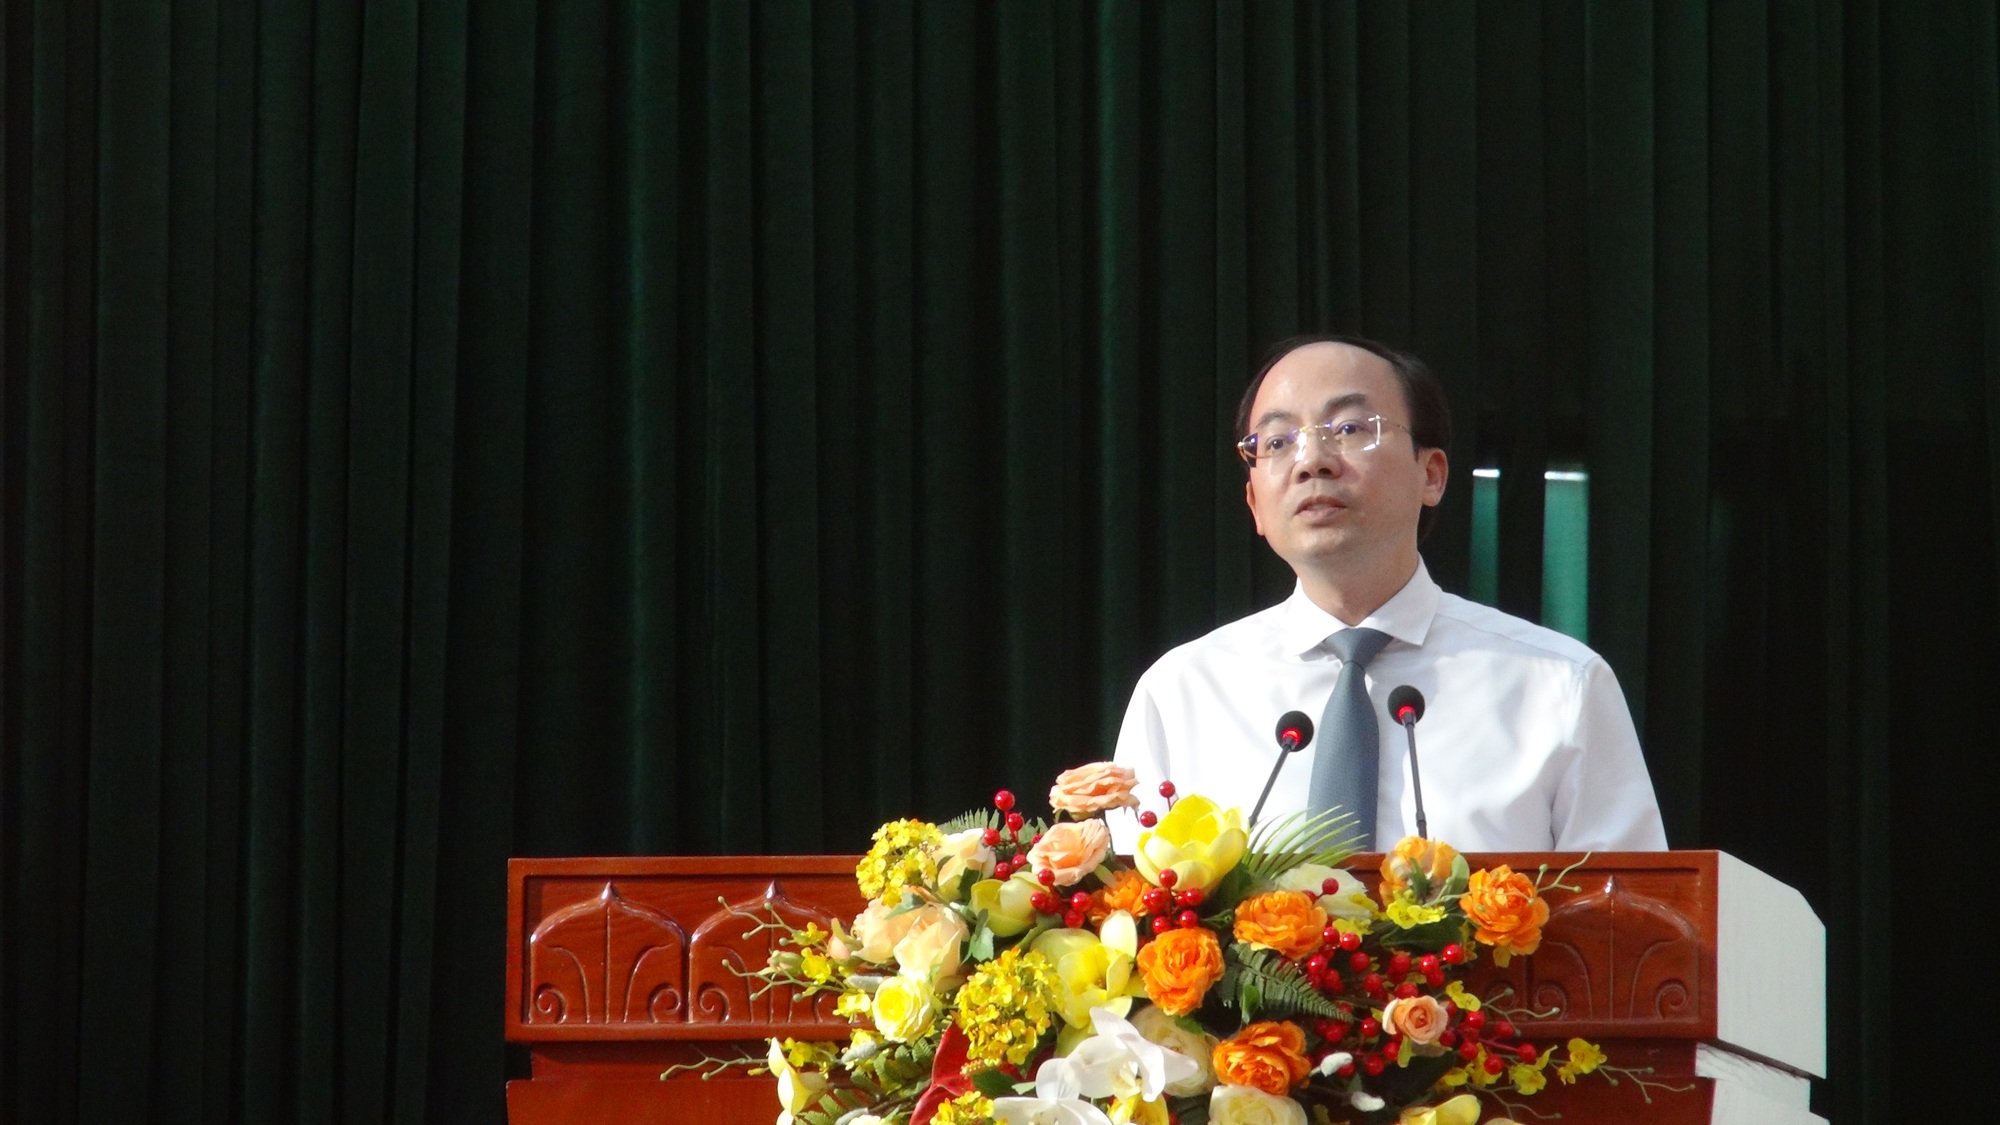 Bắc Kạn: Chủ tịch UBND tỉnh đối thoại với nông dân, nóng vấn đề quy hoạch - Ảnh 2.